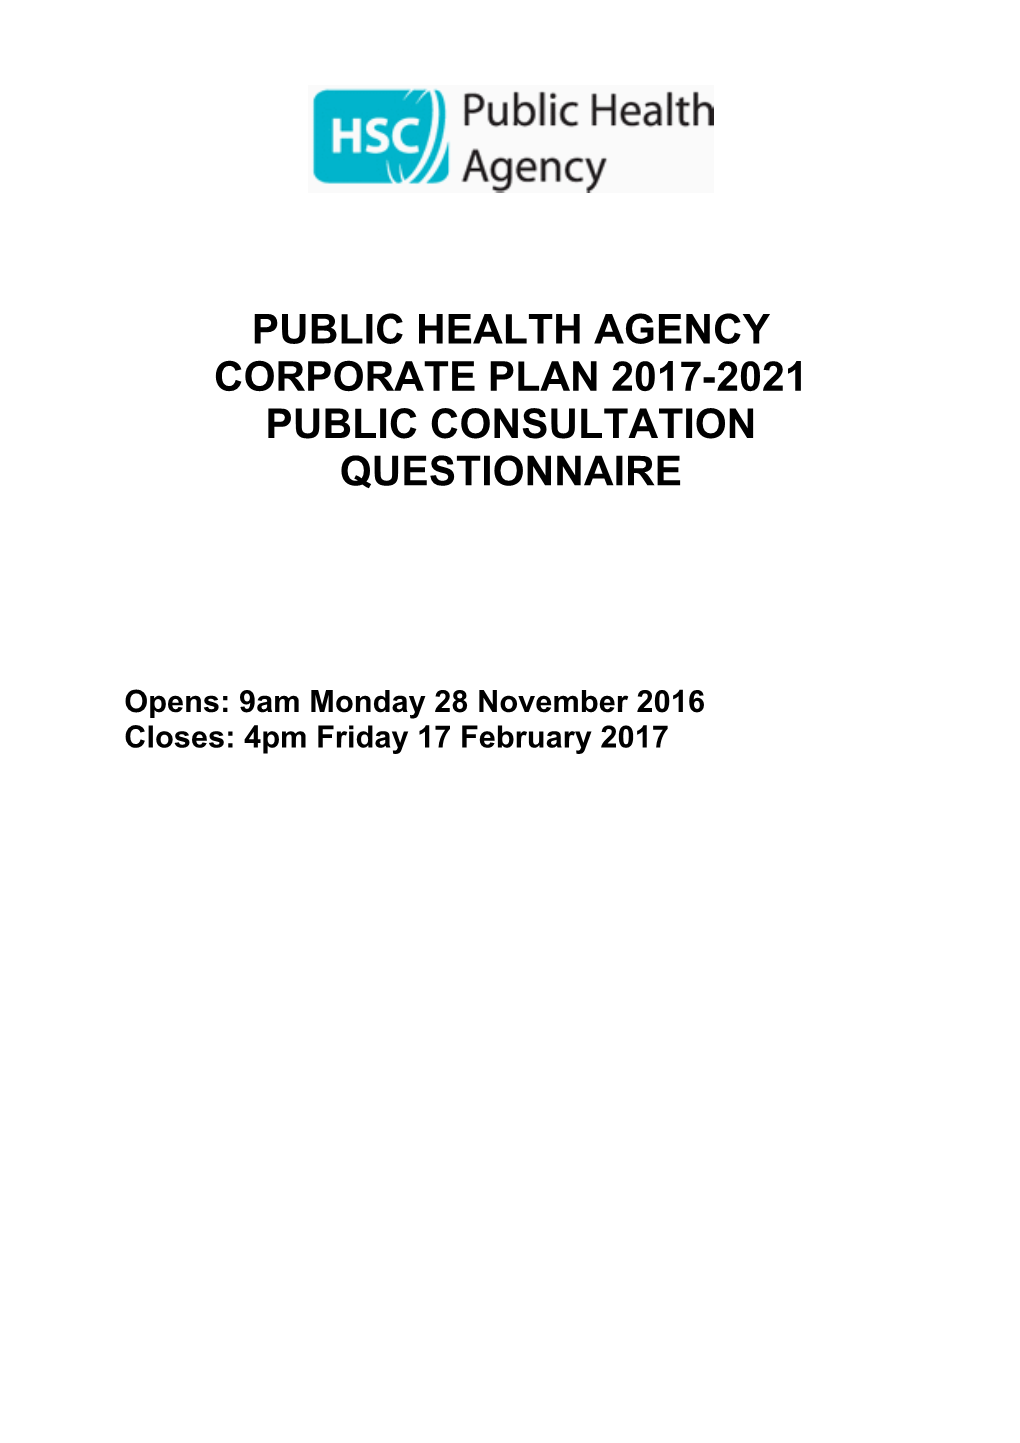 Public Health Agency Corporate Plan Public Consultation Quetionnaire